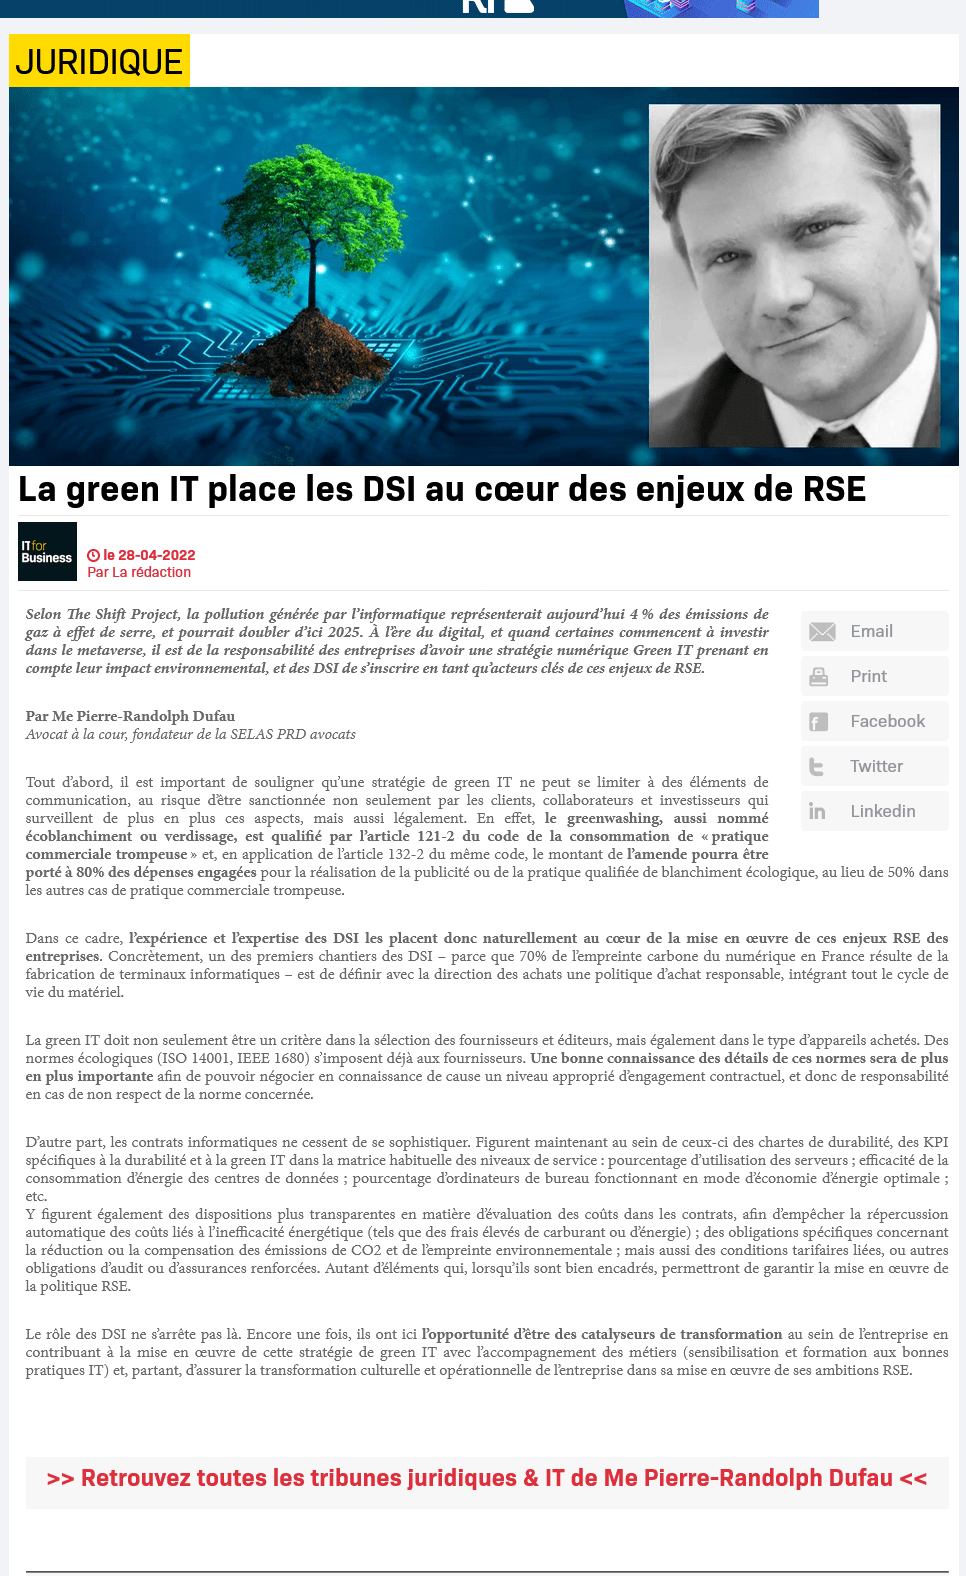 Vous êtes en train de consulter Le green IT place les DSI au coeur des enjeux de RSE